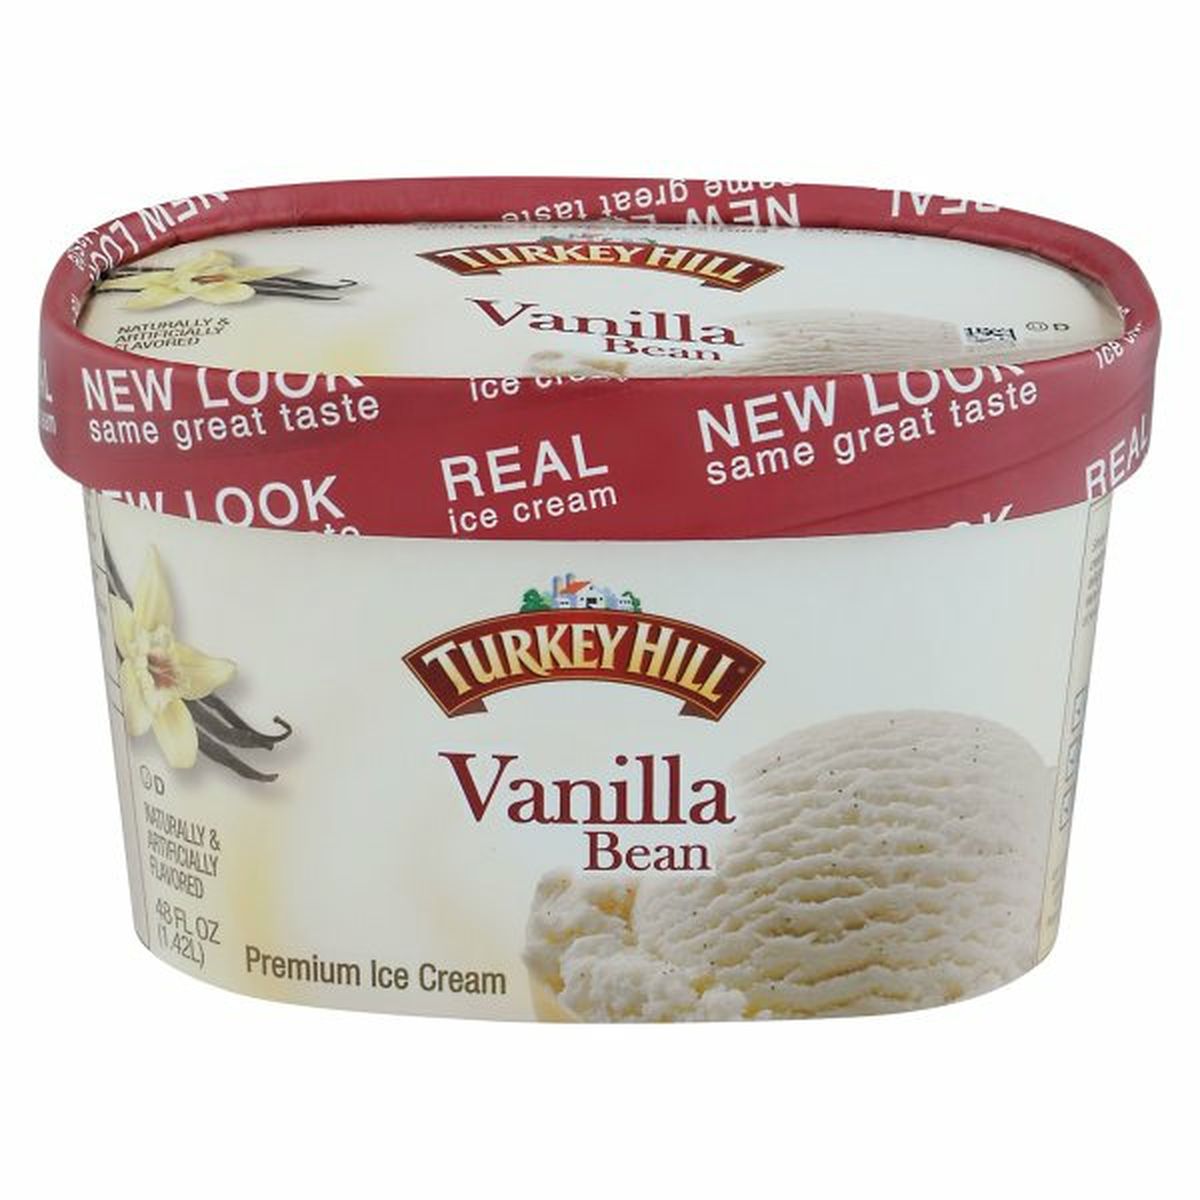 Calories in Turkey Hill Ice Cream, Premium, Vanilla Bean